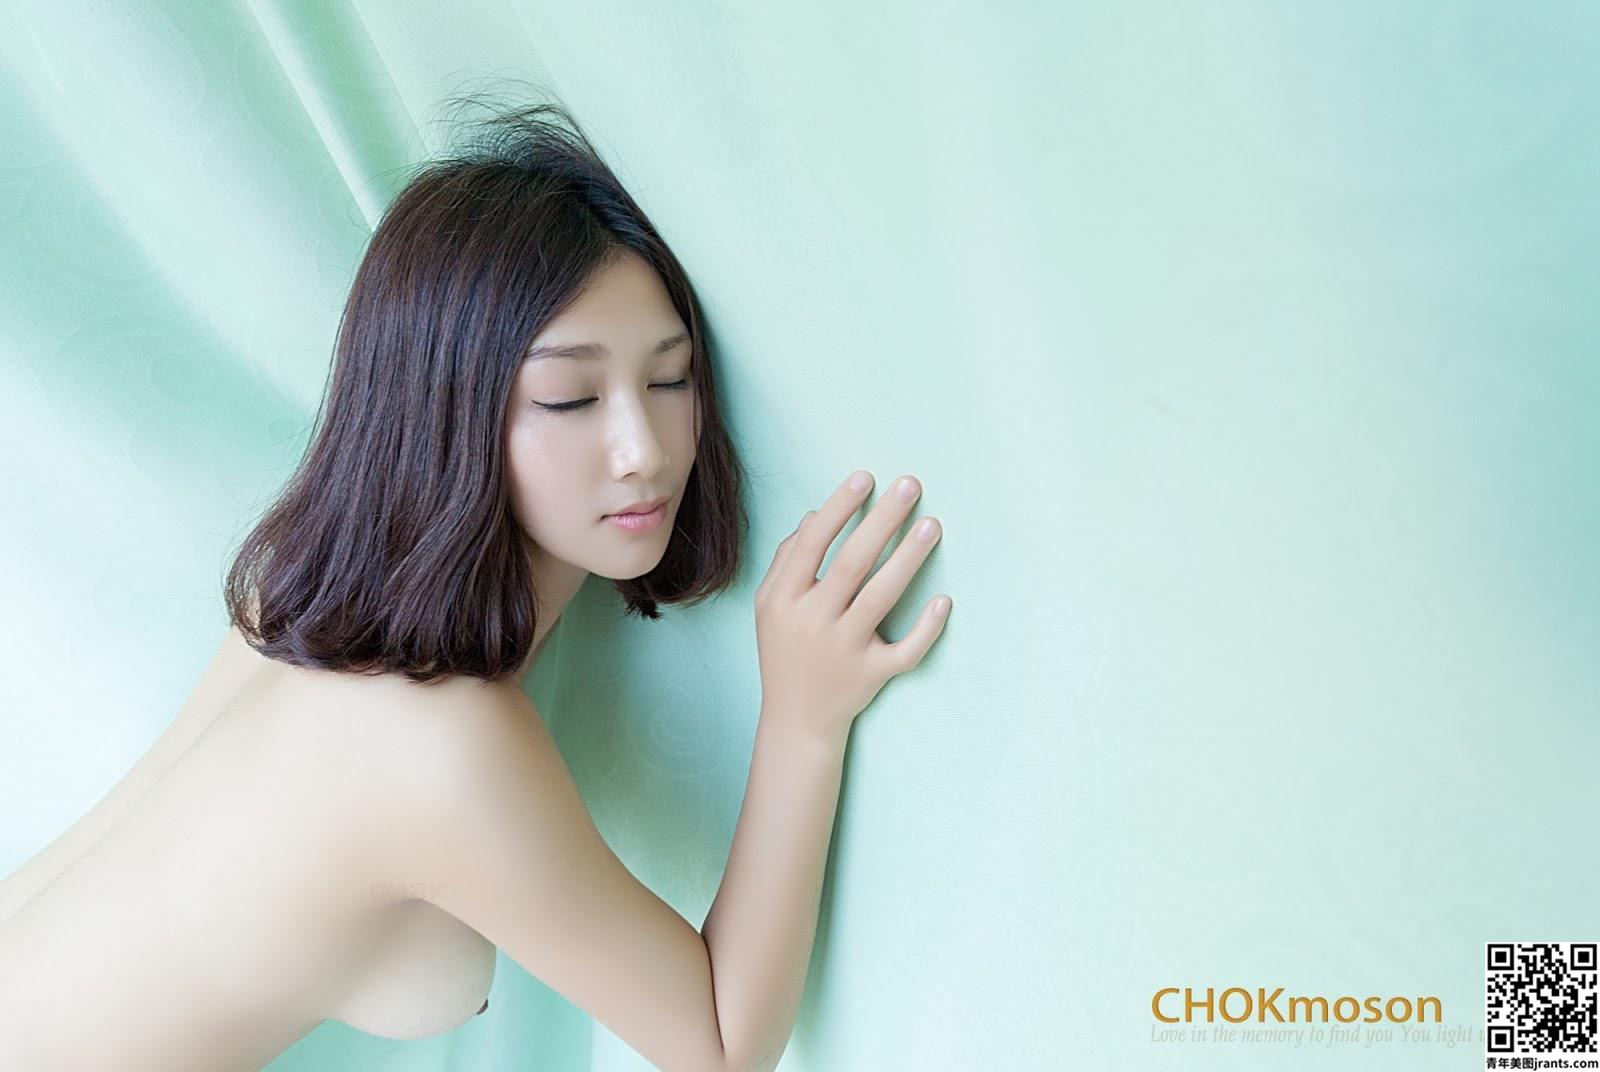 [CHOKmoson作品] Beautiful Naked Girls Xiaoyu 小玉 (70P)